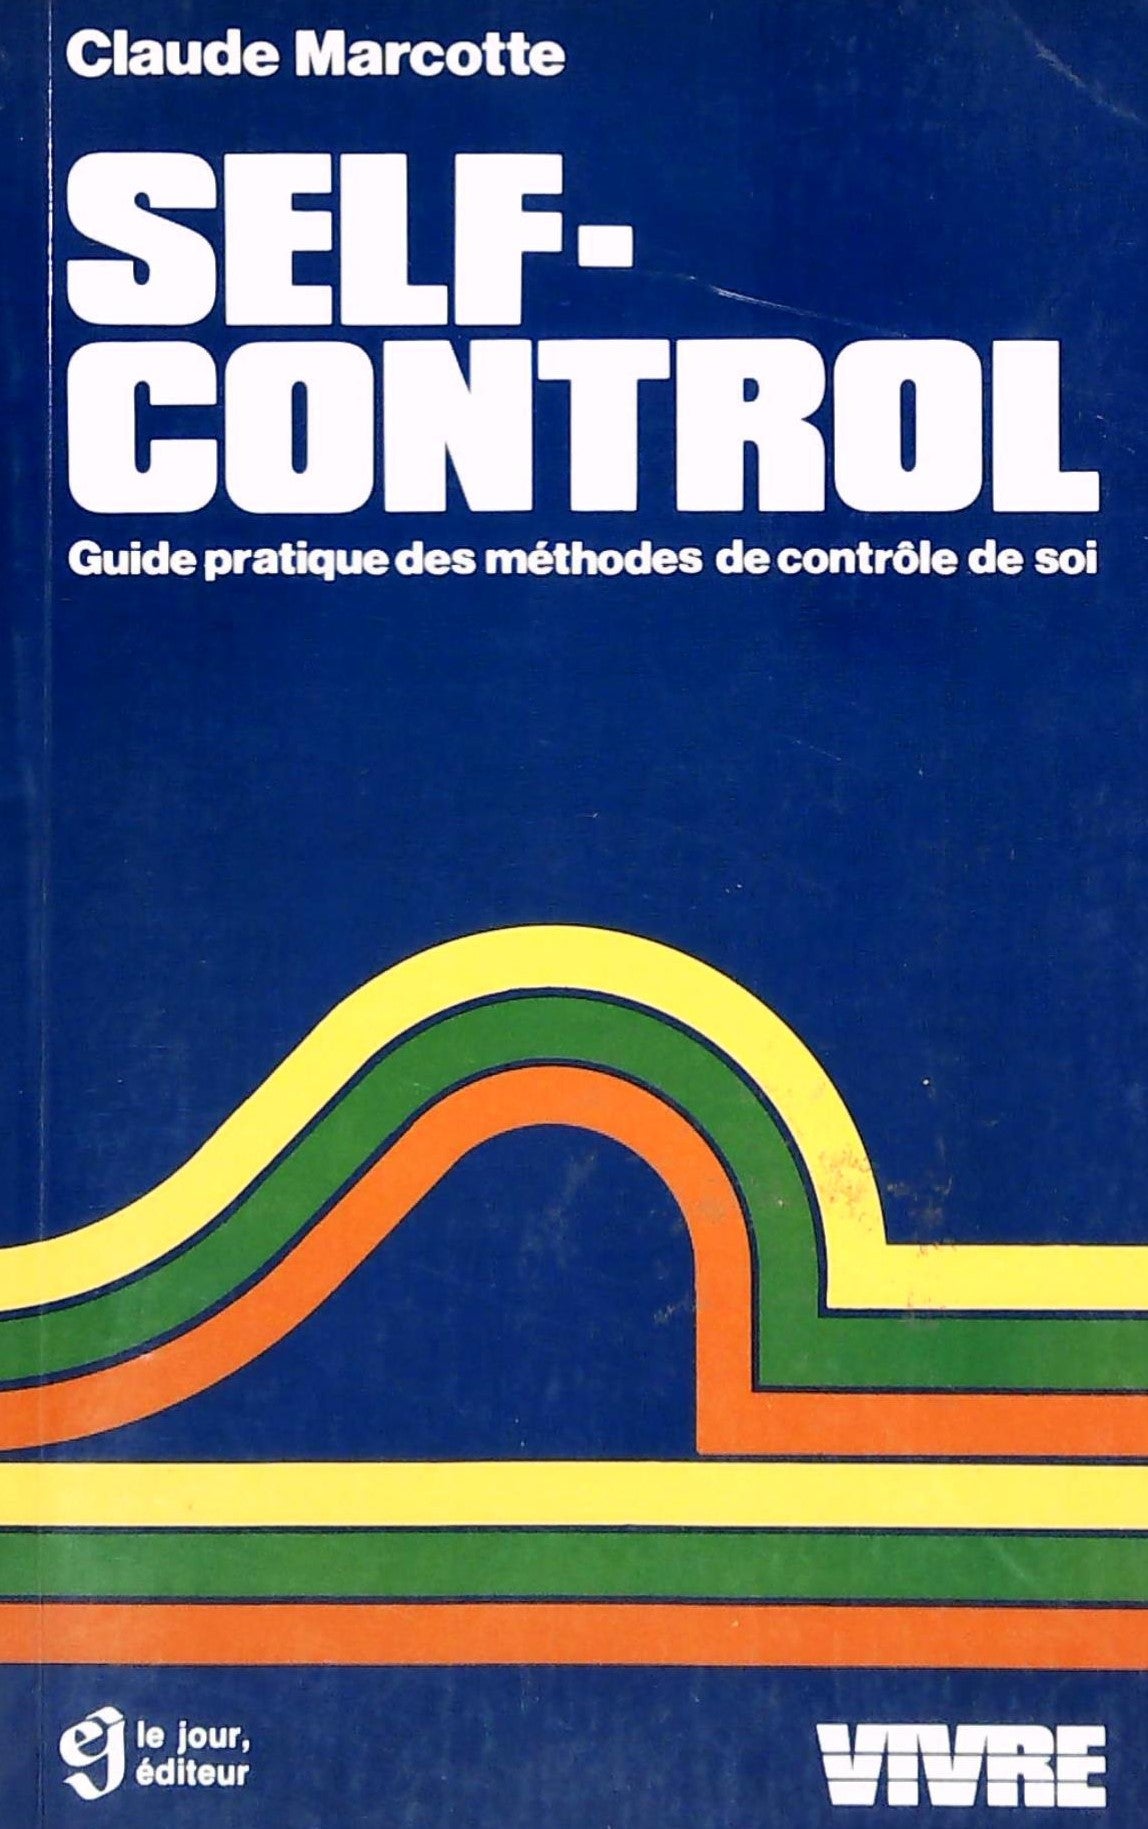 Livre ISBN 2890441210 Vivre : Self-Control : Guide pratique des méthodes de contrôle de soi (Claude Marcotte)